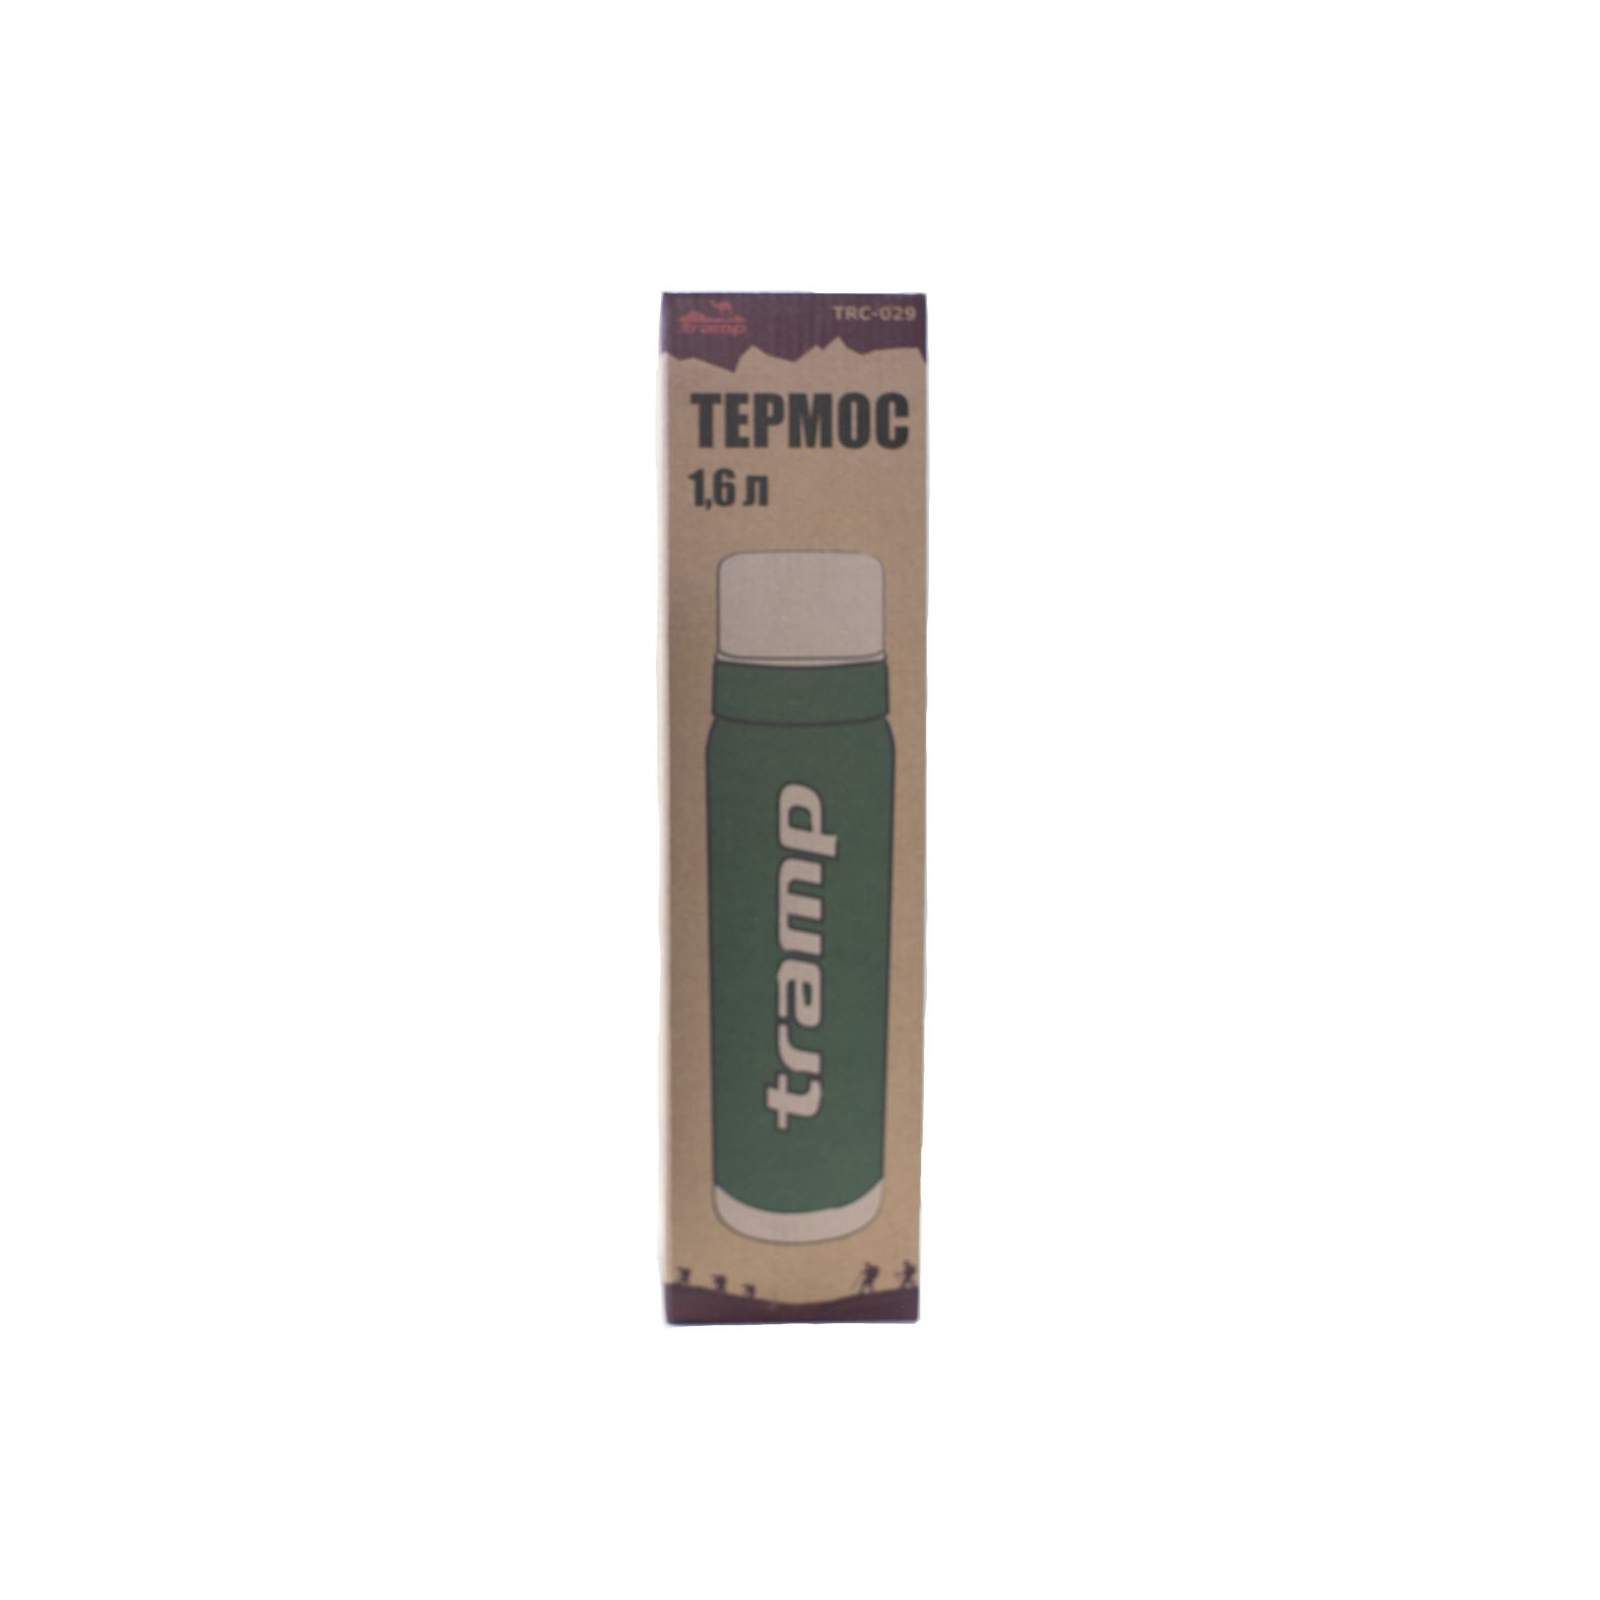 Термос Tramp 0,5 л оливковый (TRC-030-olive-old) изображение 3